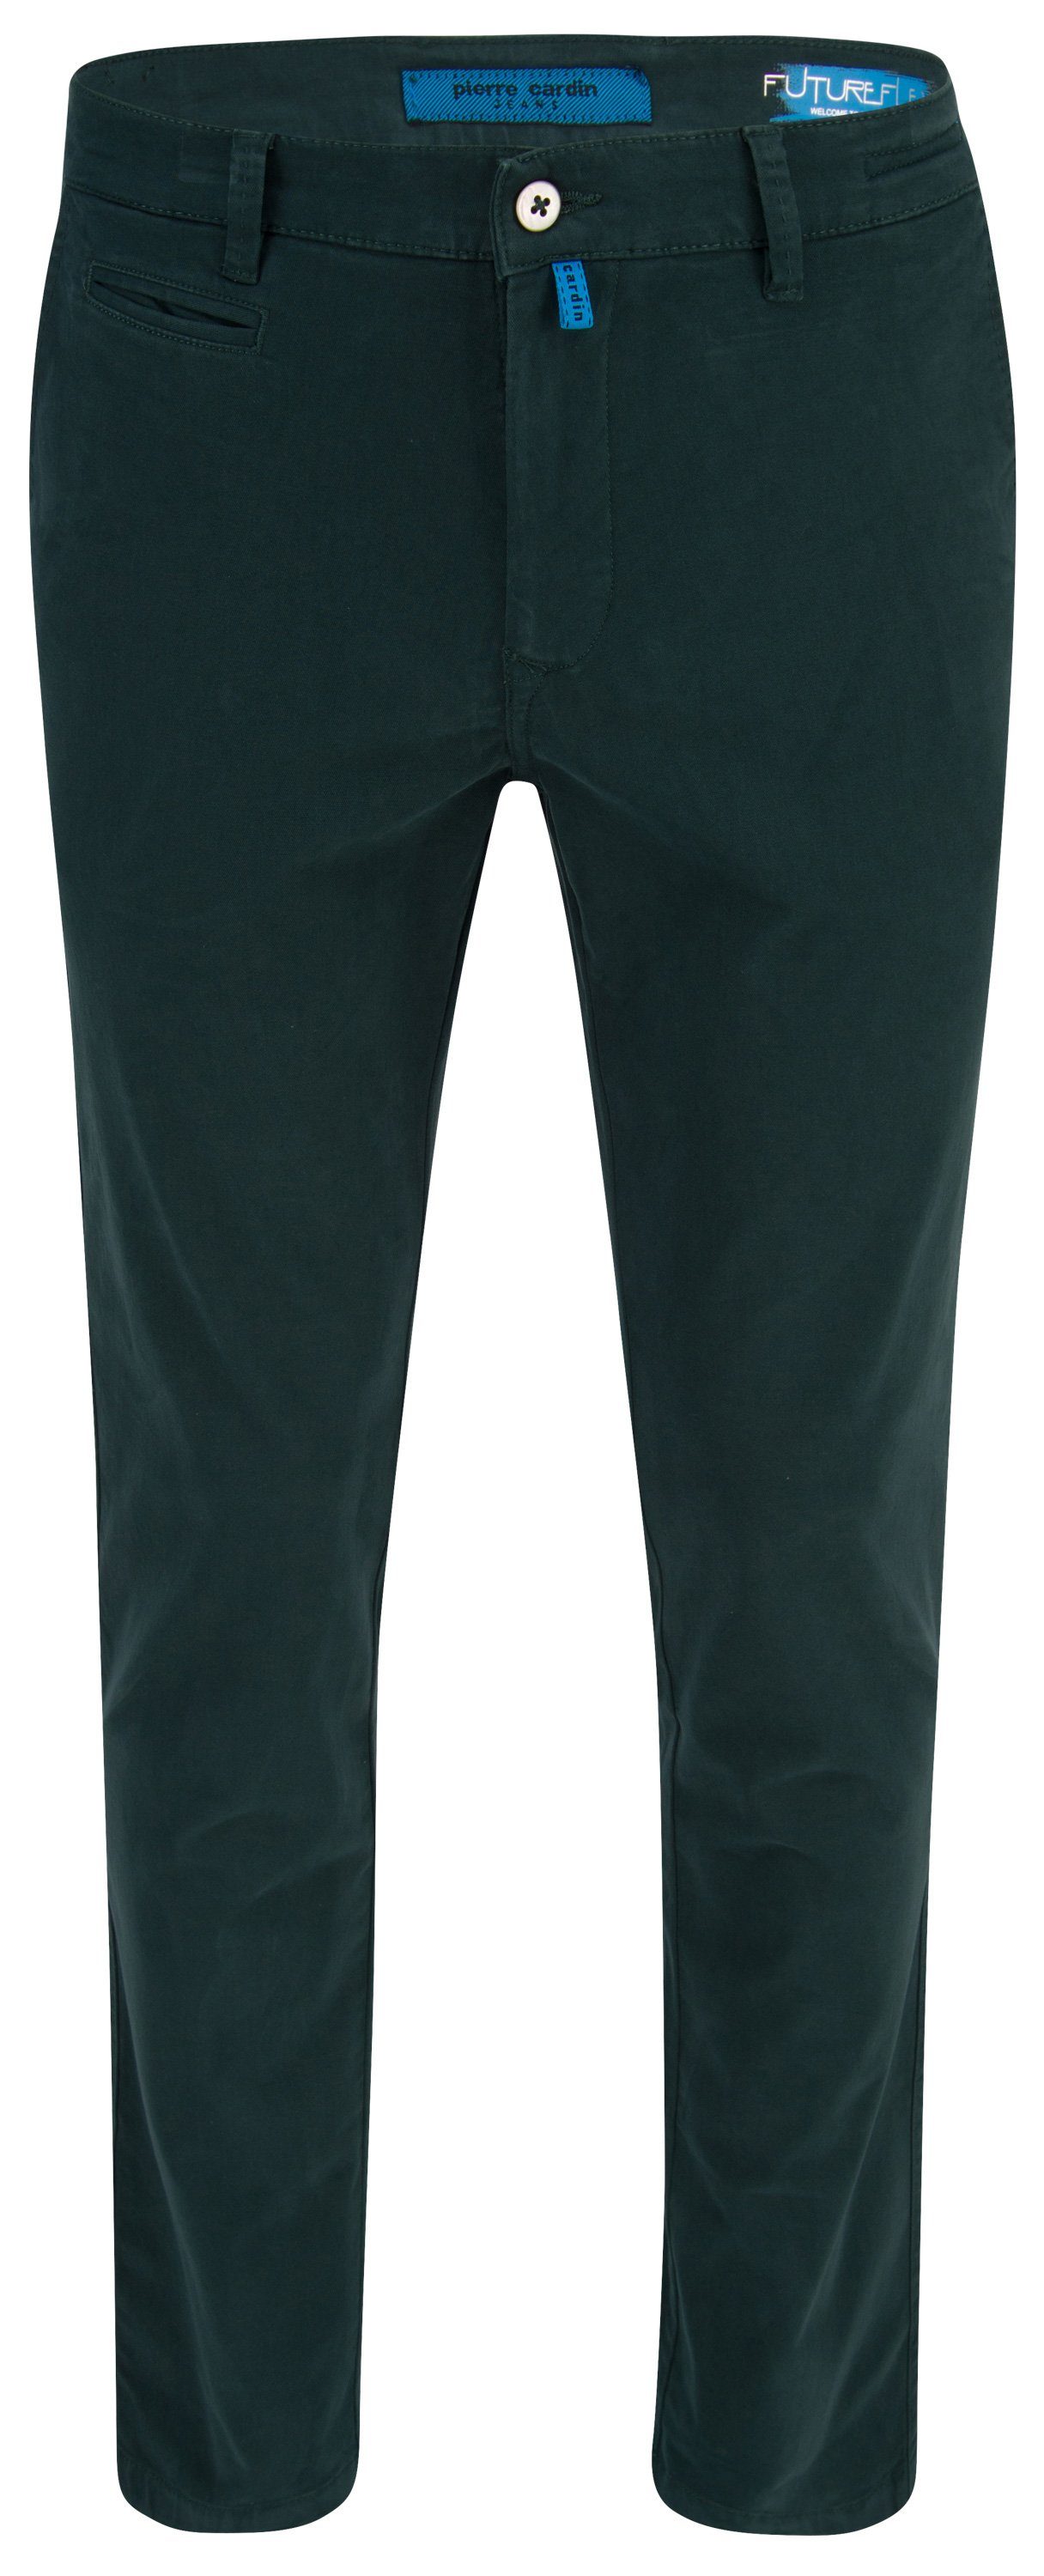 Pierre Cardin 5-Pocket-Jeans PIERRE CARDIN FUTUREFLEX LYON fir green 33757 2233.75